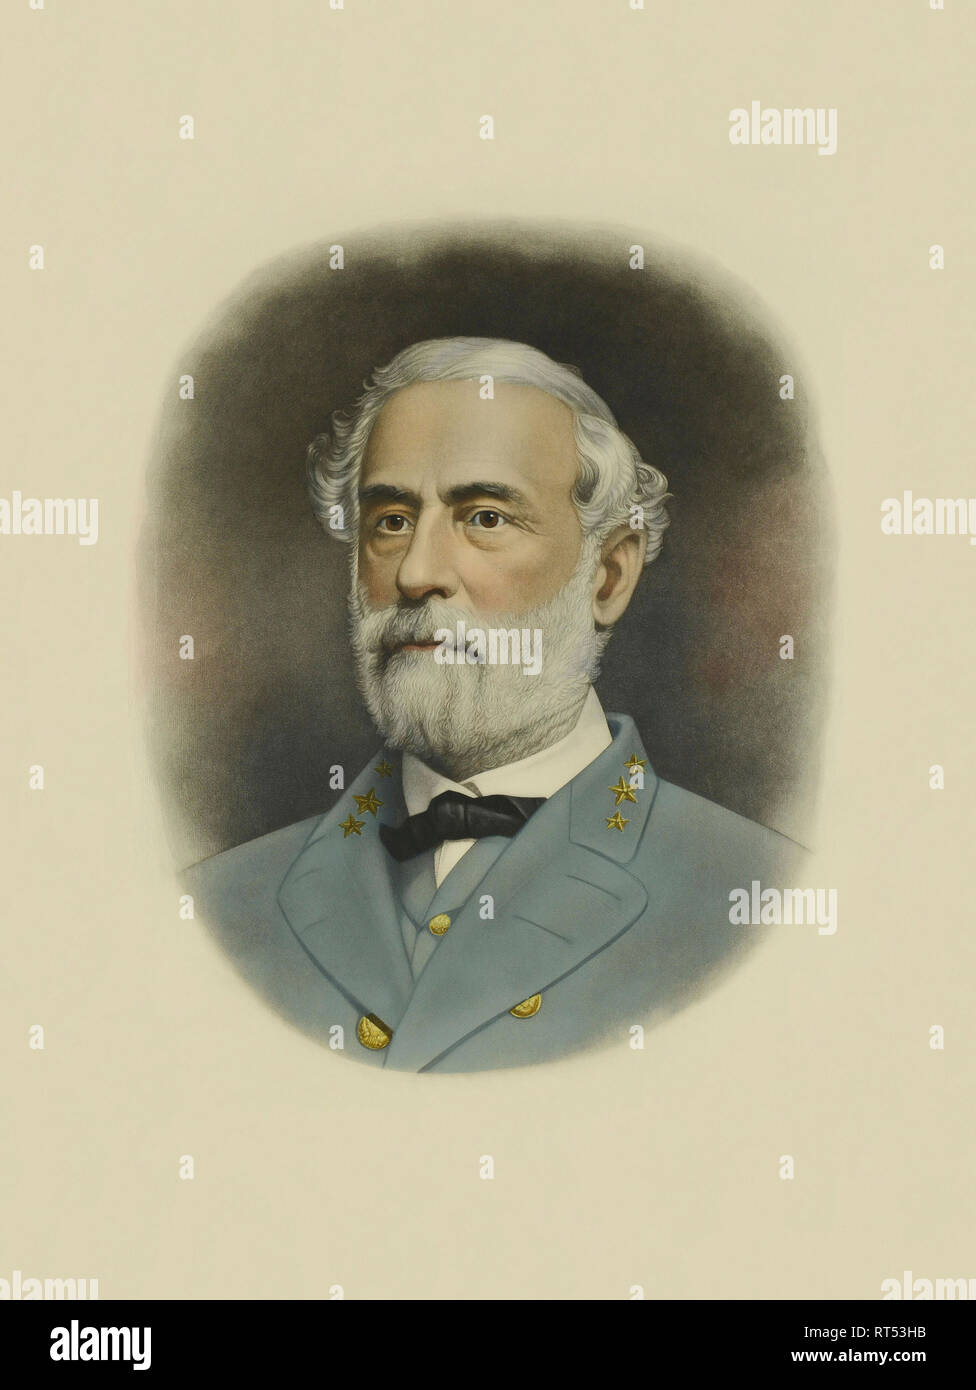 La guerre civile imprimer dépeint un portrait couleur du général Robert E. Lee. Banque D'Images